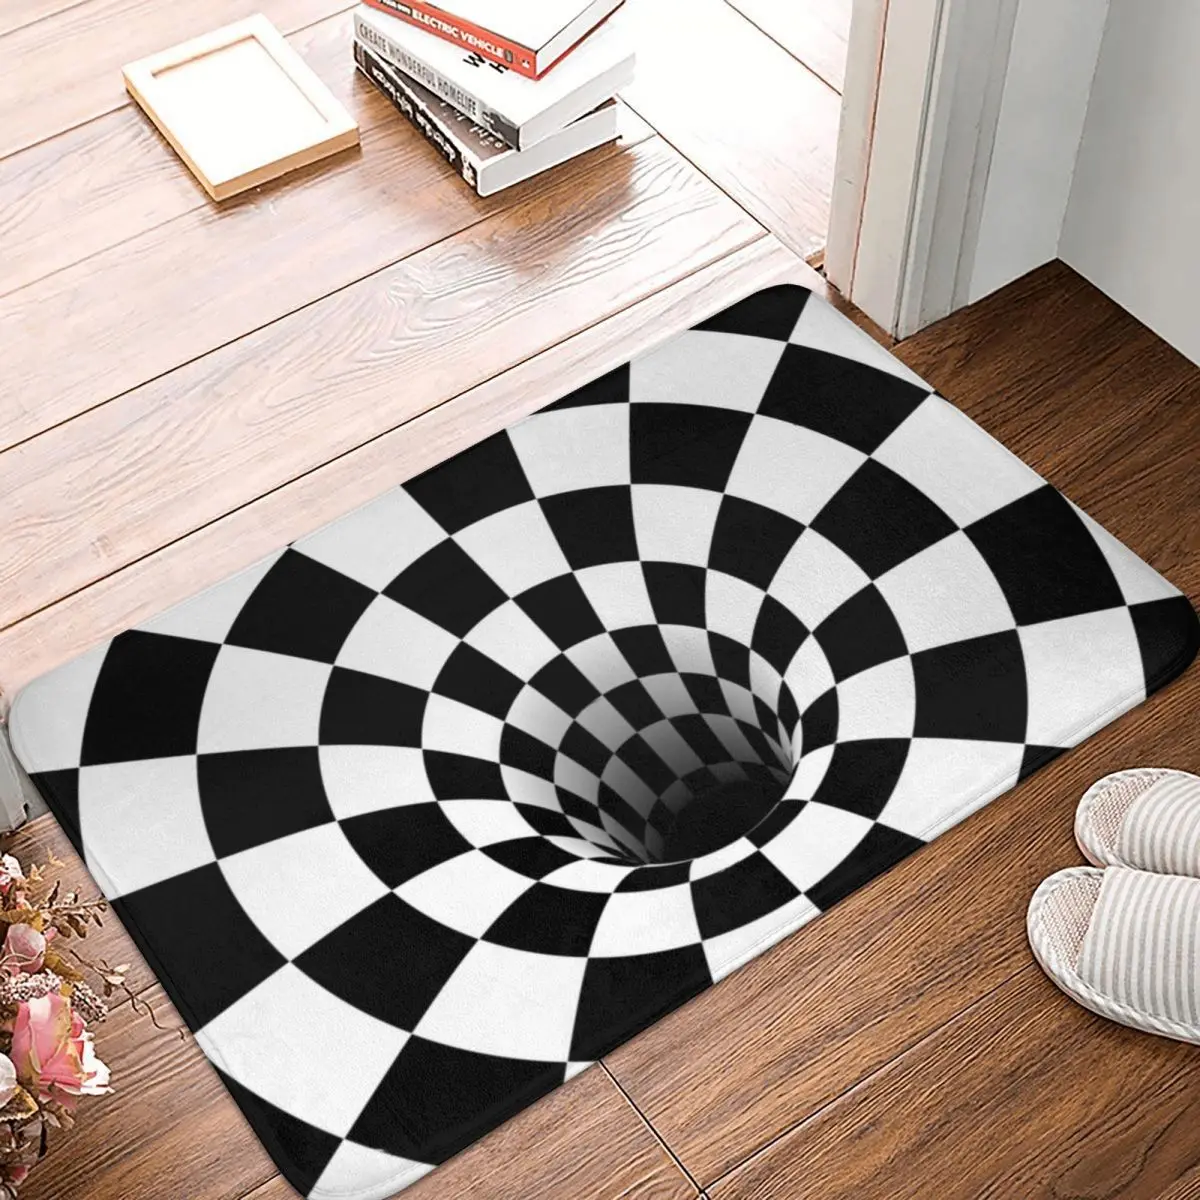 

Коврик для ванной, шахматный 3D ковер с черными отверстиями и оптической иллюзией, Нескользящий Впитывающий Коврик для входа, гостиной, дома,...